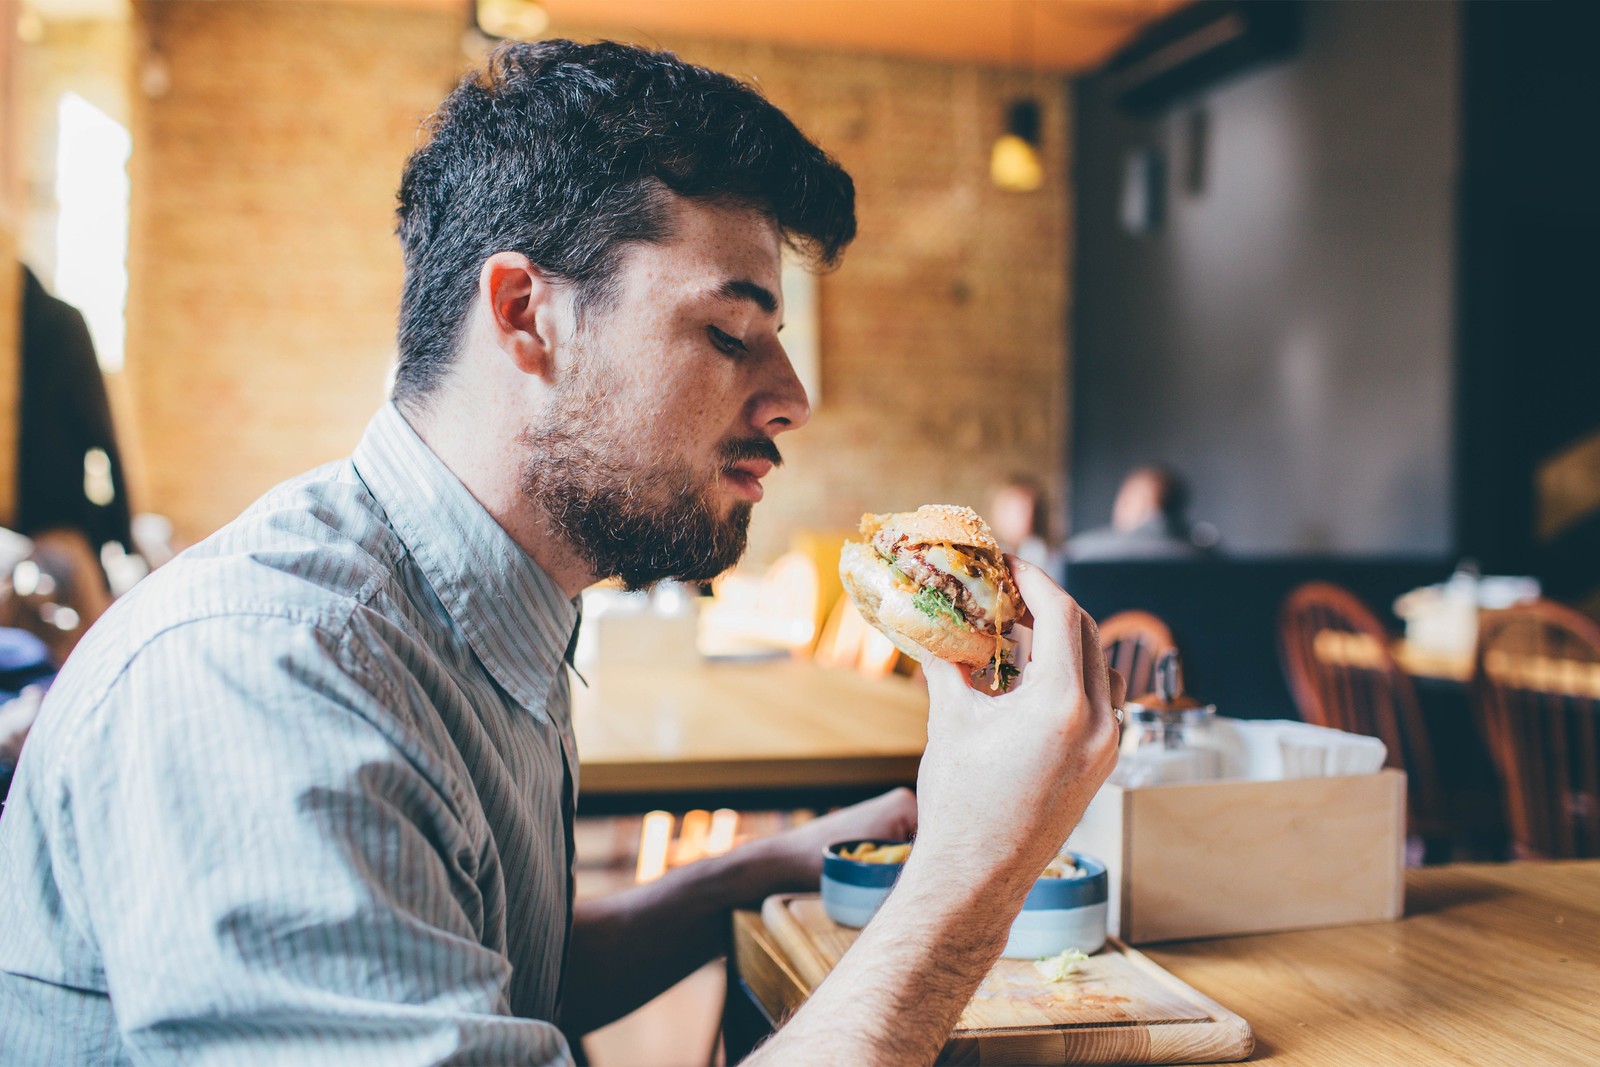 رجل يتناول طعامًا تعبيرية عن الوجبات السريعة - مصدر الصورة: Shutterstock